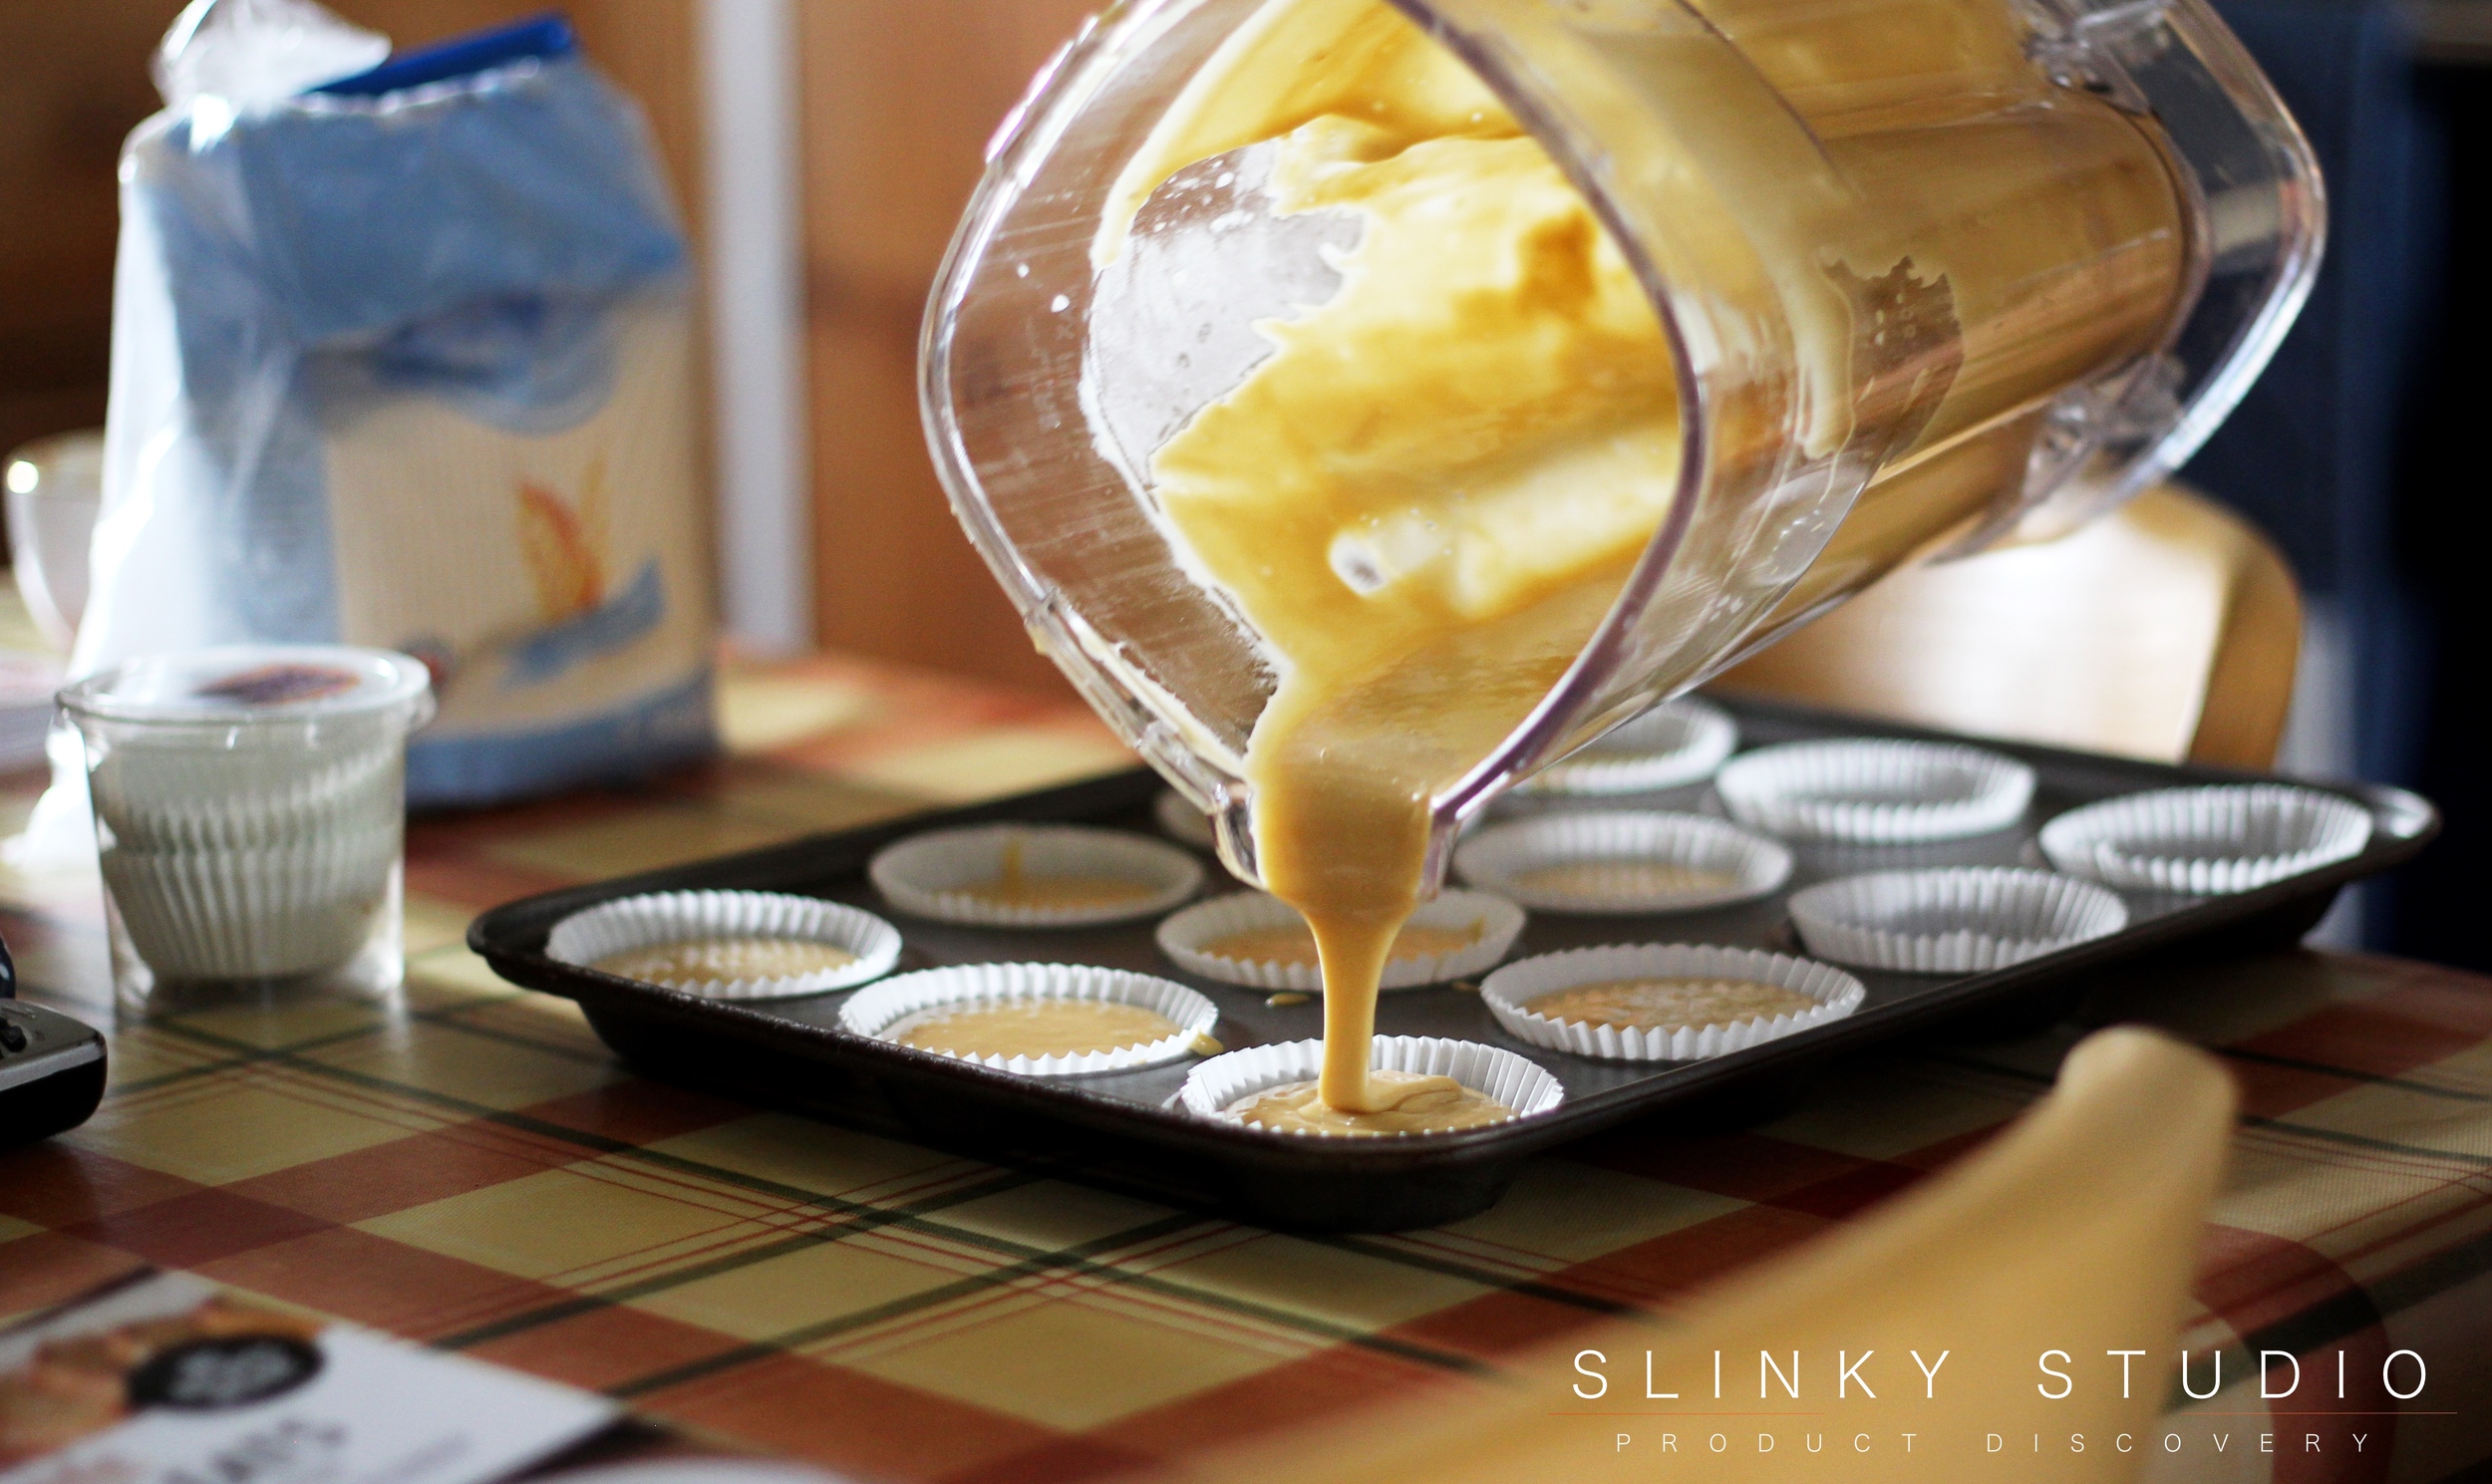 Optimum G.21 Platinum Series Blender Vanilla Cupcakes Pouring Mixture info Cases in Tin.jpg